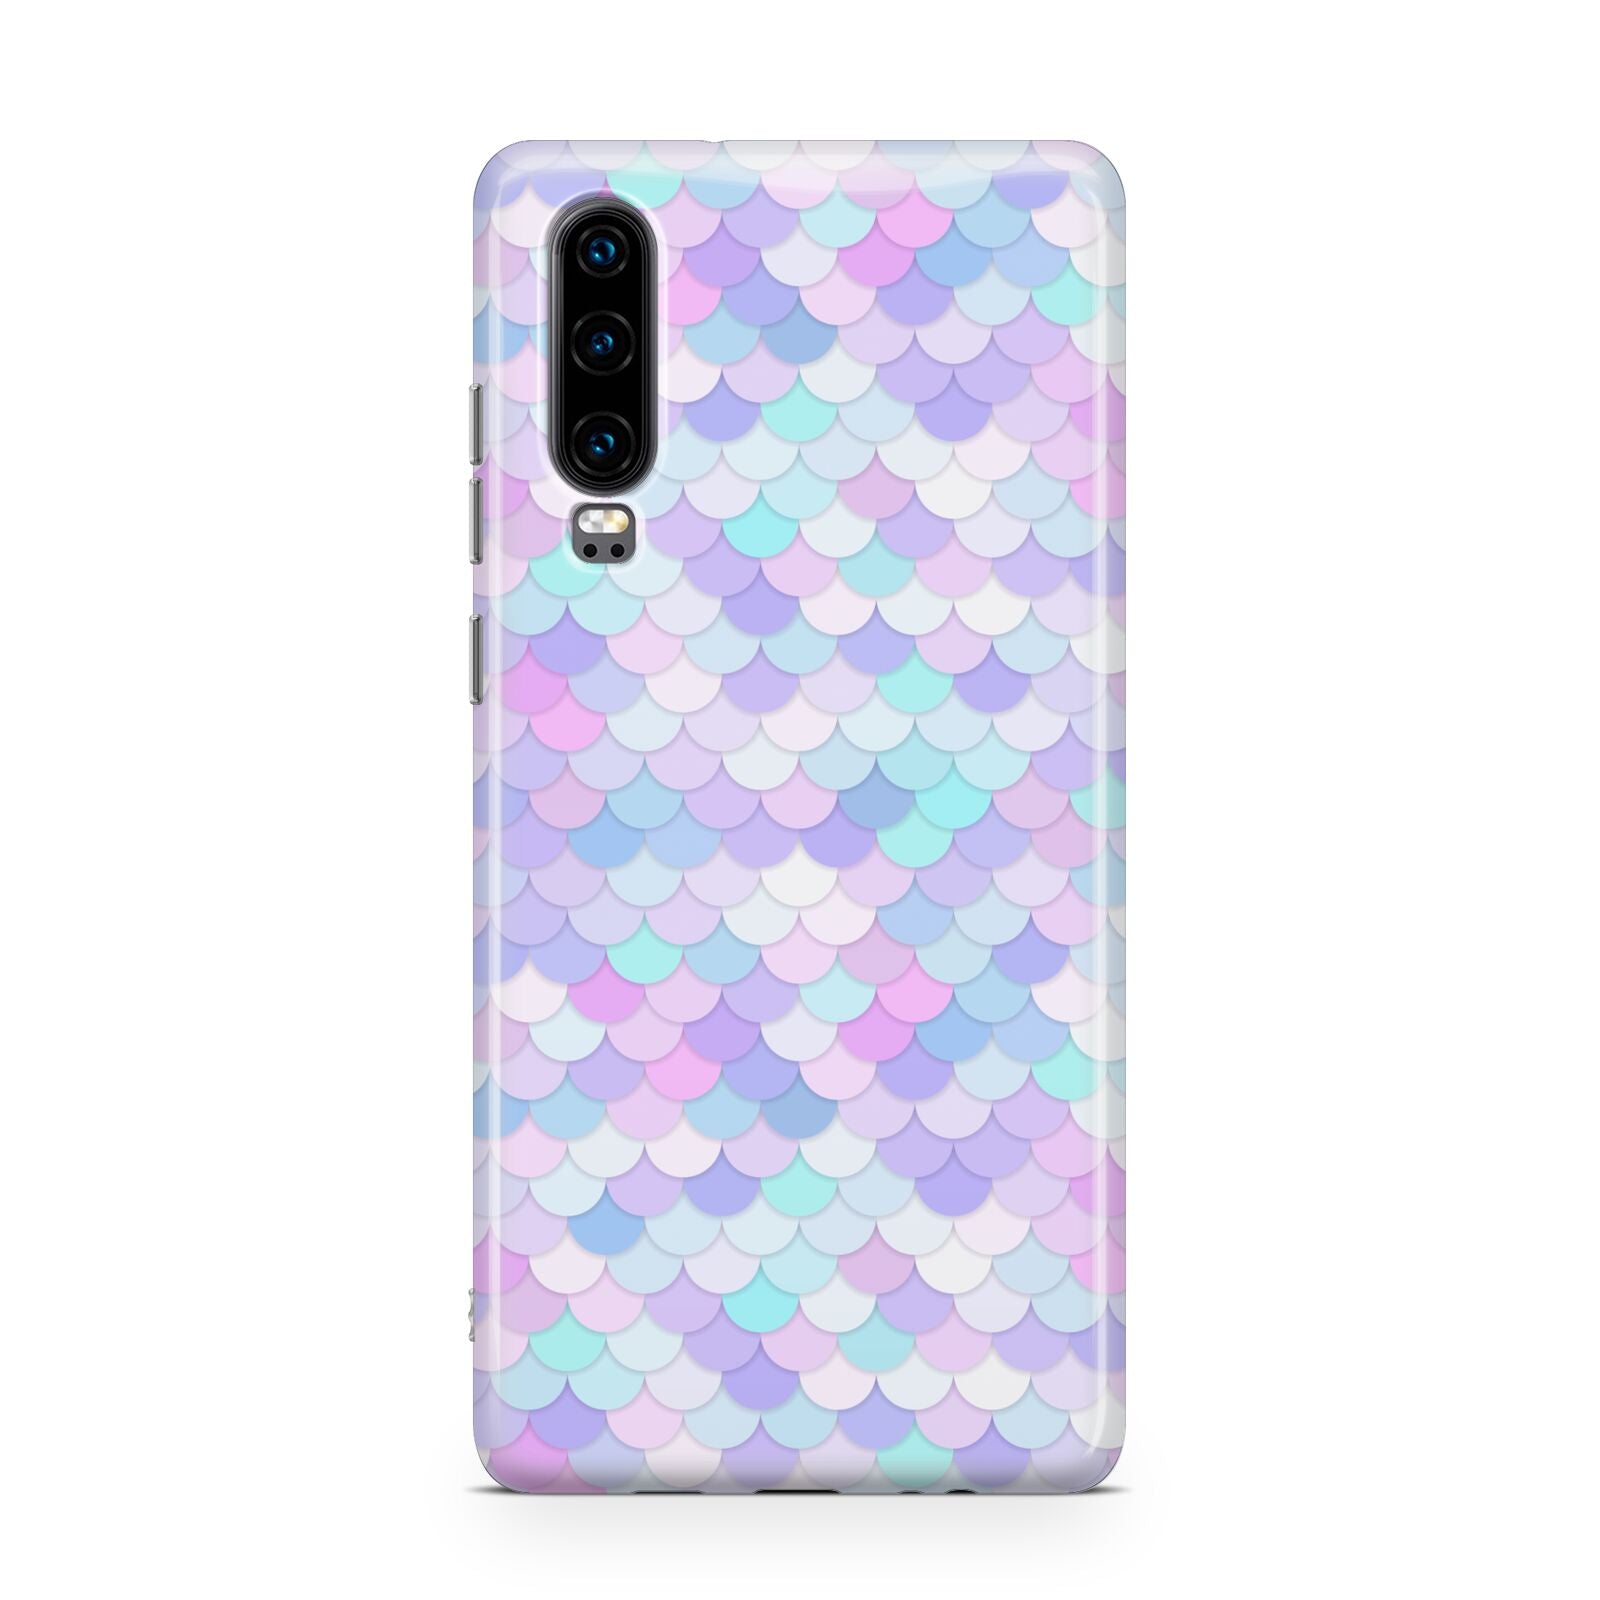 Mermaid Huawei P30 Phone Case